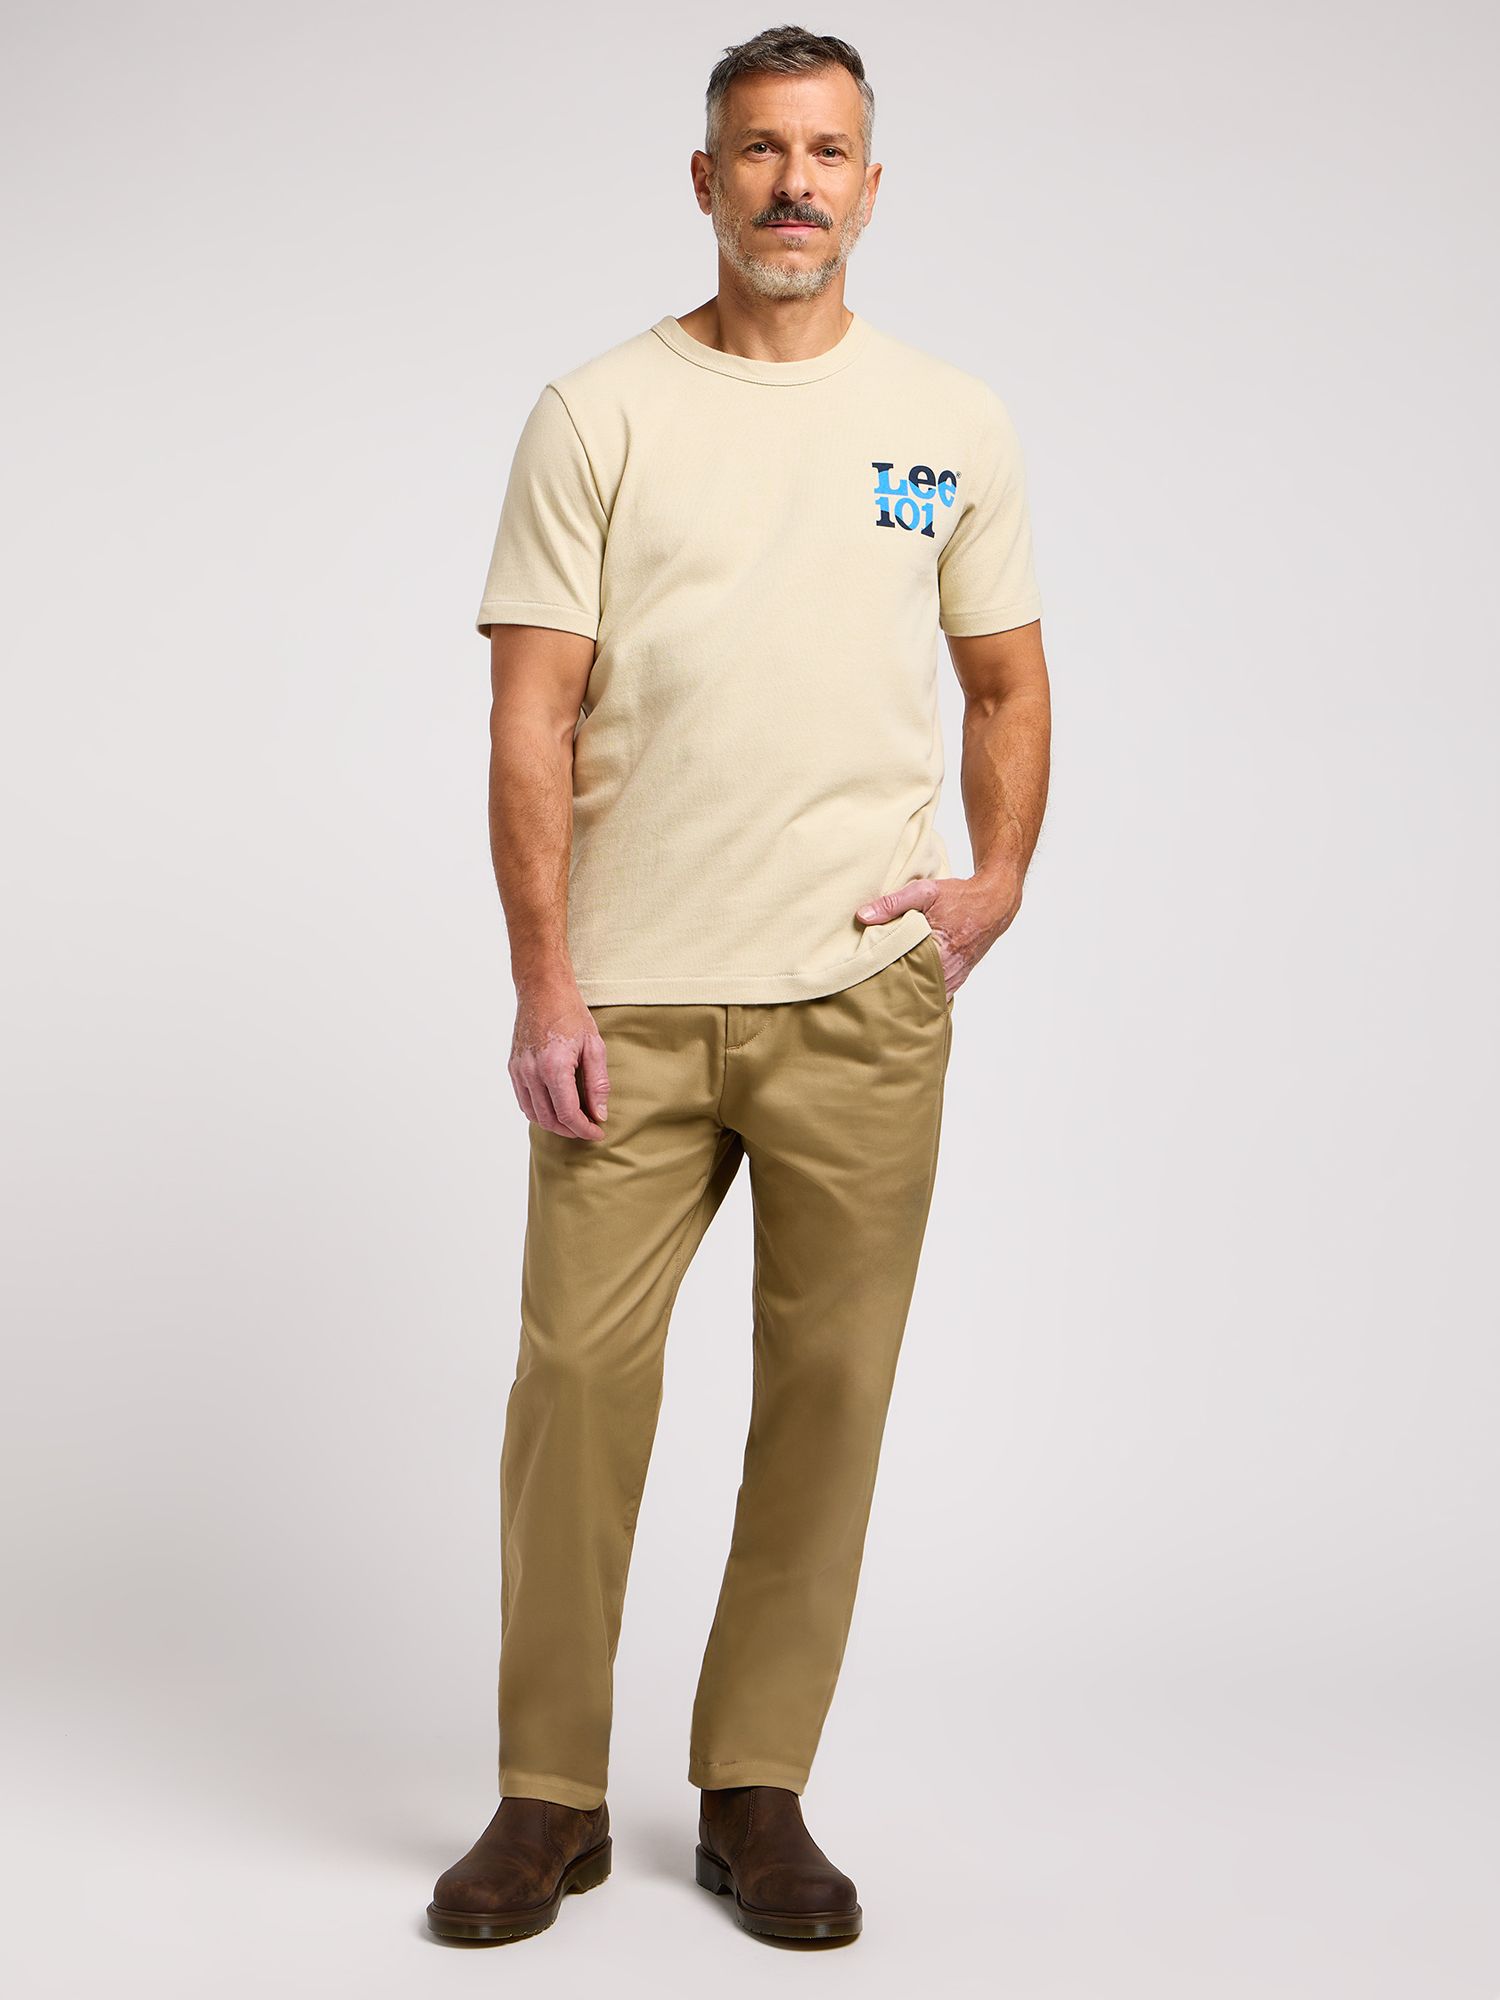 Lee 101 Cotton T-Shirt, Greige, S